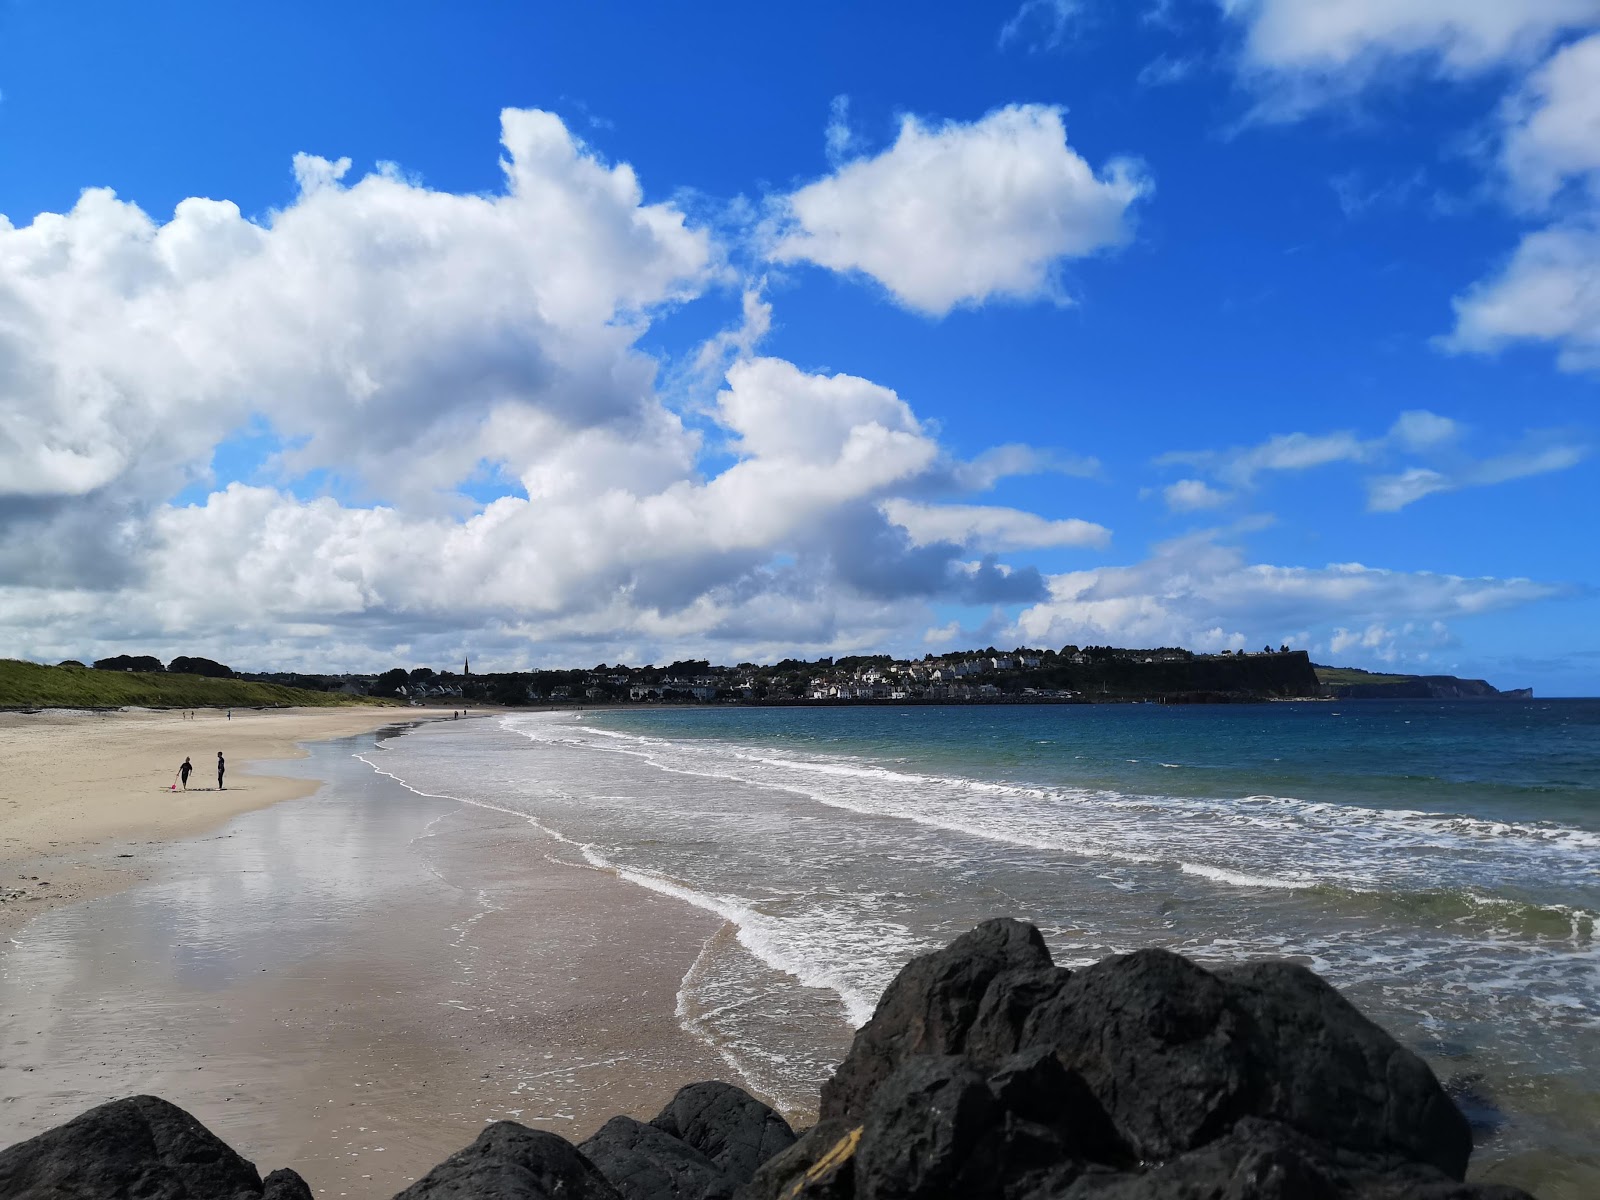 Fotografie cu Ballycastle Beach - locul popular printre cunoscătorii de relaxare